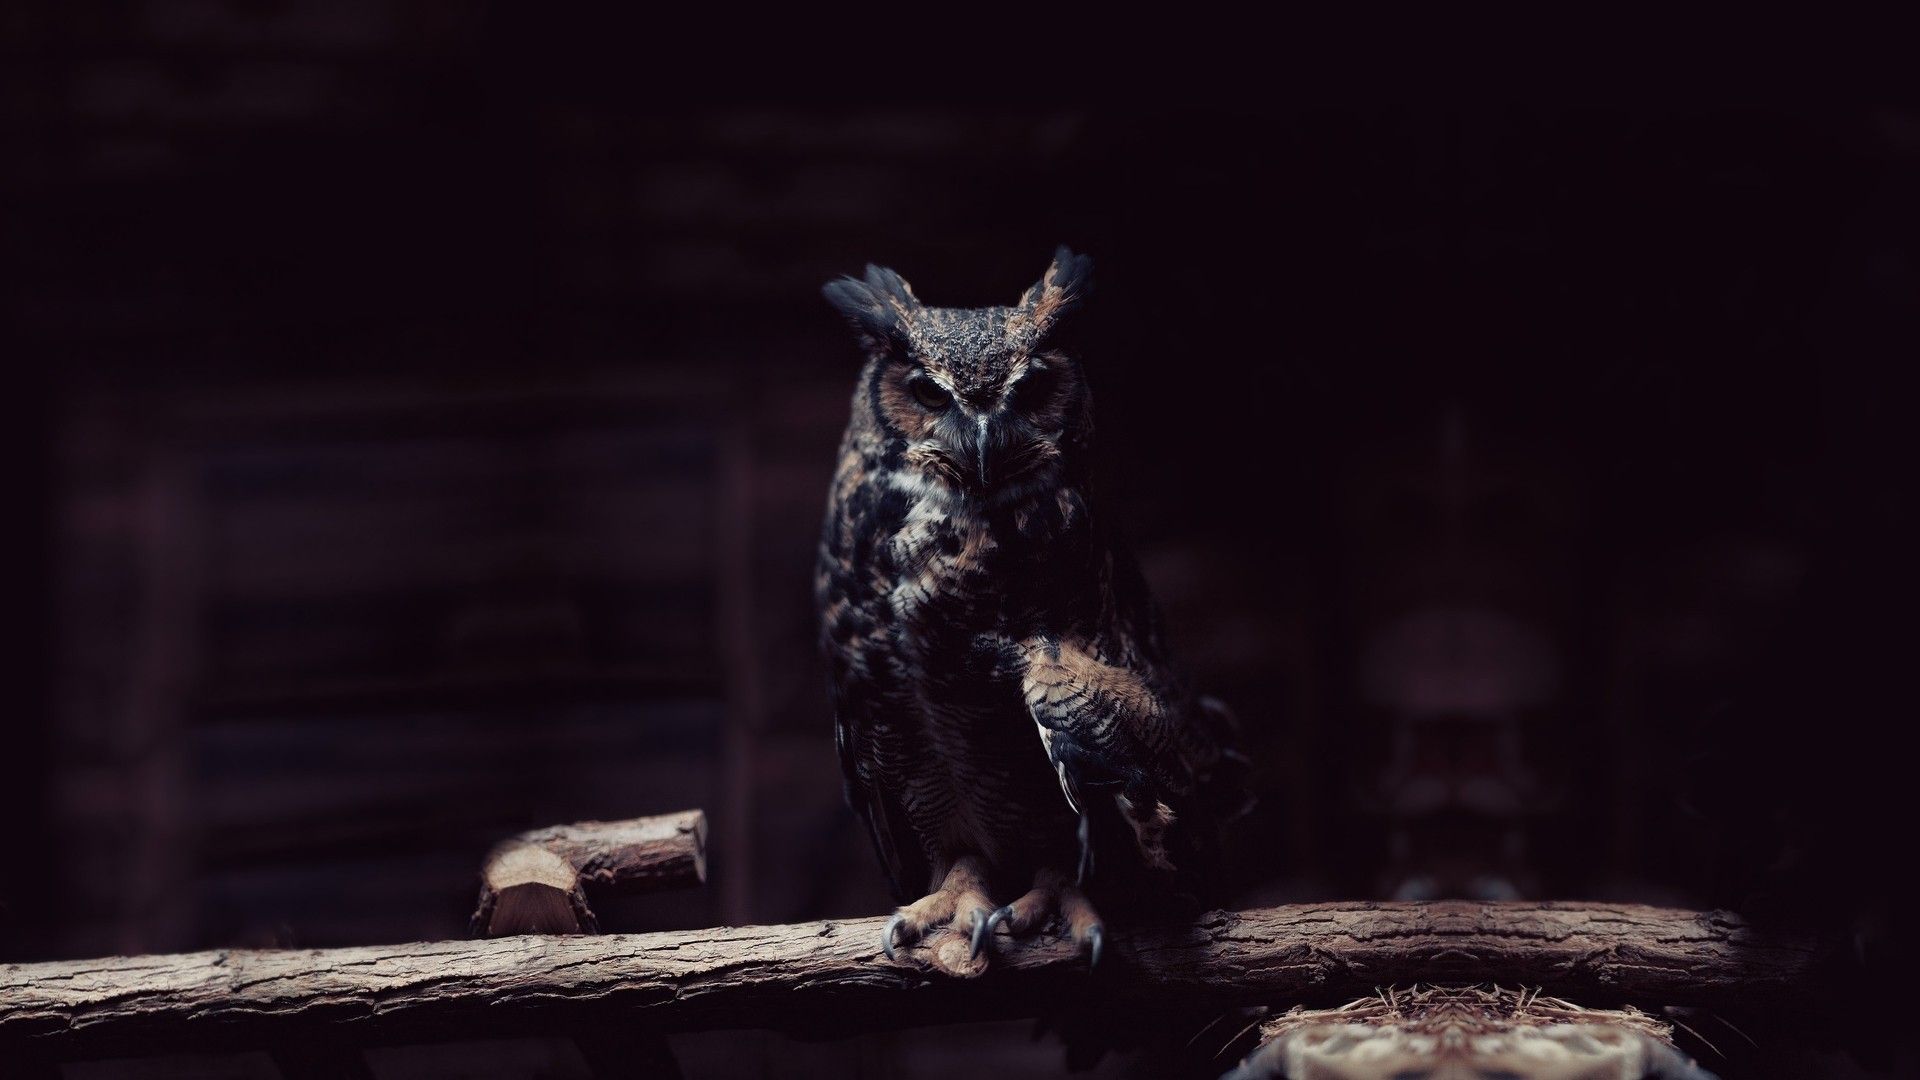 HD Owl Wallpaper (más de 78 imágenes)